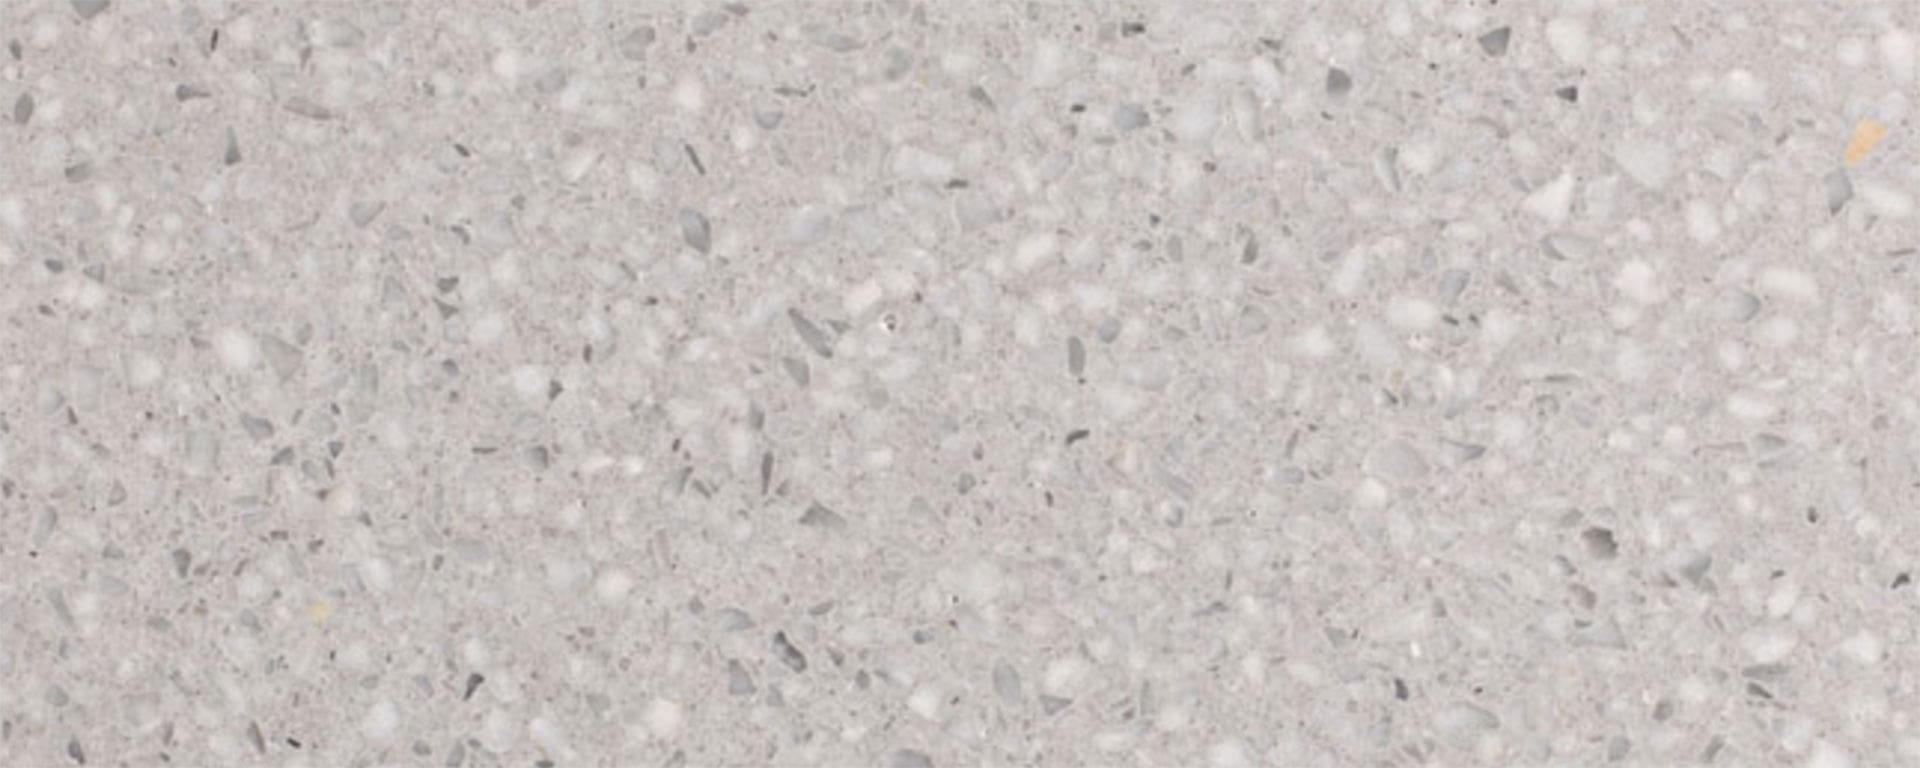 MMDA-008-terrazzo-marmo-cemento